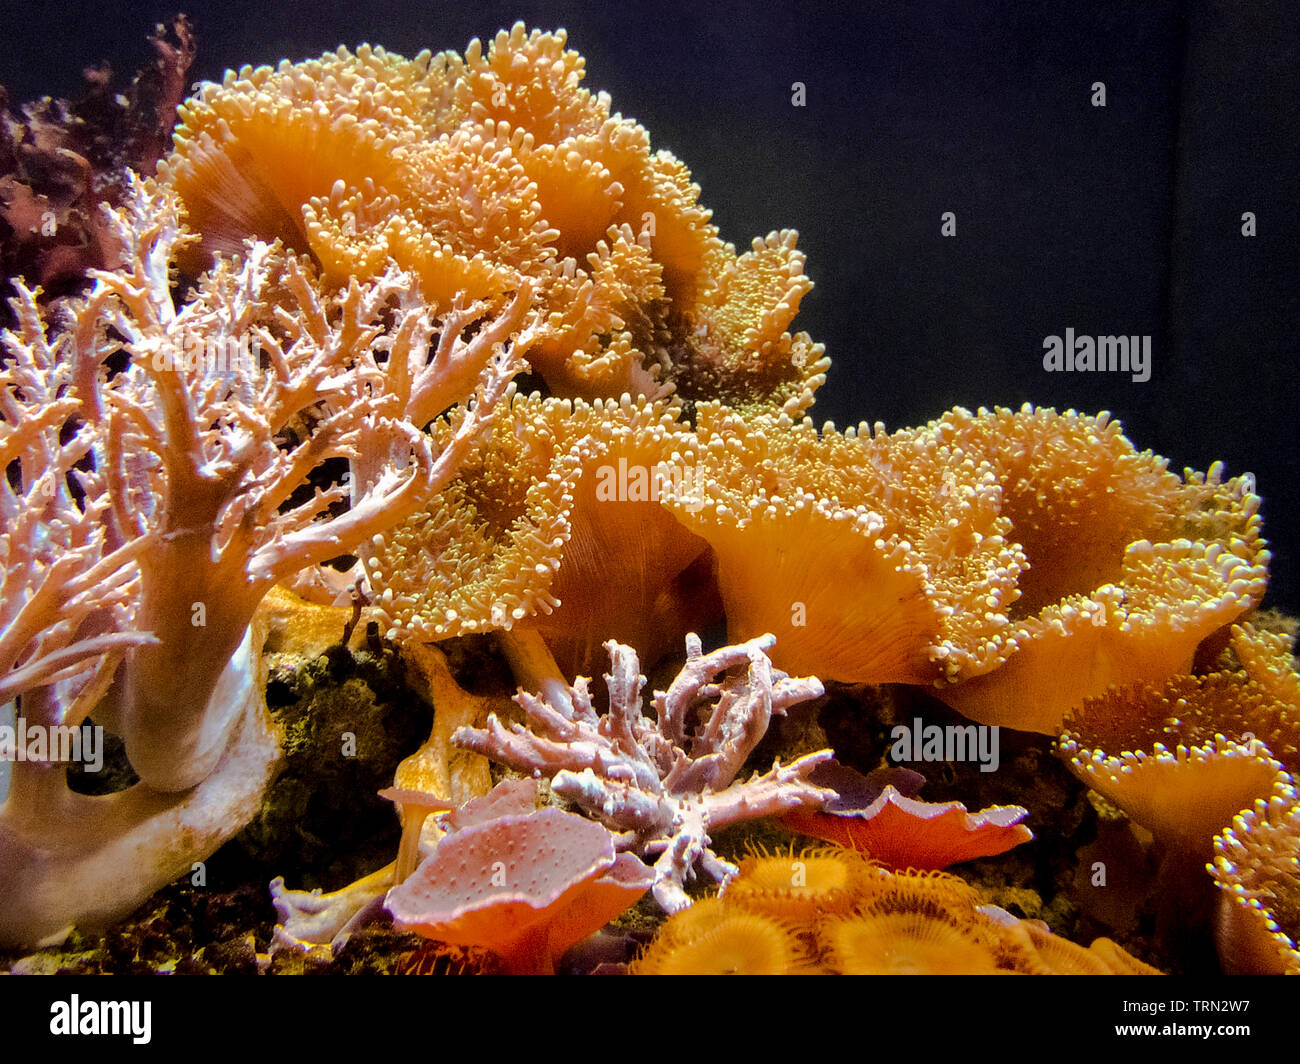 Korallen leben unter Wasser kann leicht durch das Glas Seiten eines Aquariums an der Mote Marine Laboratory, eine beliebte Touristenattraktion in Sarasota, Florida, USA gesehen werden. Korallen sind soft-bodied Organismen, genannt Polypen, die seit vielen Jahren auf ein Skelett von harten, schützenden Kalkstein wachsen Korallenriffe, viele Arten von Meereslebewesen zu bilden. Diese wirbellose Tiere sind oft in flachen tropischen Gewässern, wo Sonnenlicht Algen photosynthesizes gefunden durch die Polypen gehostet und liefert Nährstoffe zu den Korallen. Die globale Erwärmung und Umweltverschmutzung sind ständige Bedrohung der Korallenriffe rund um die Welt. Stockfoto